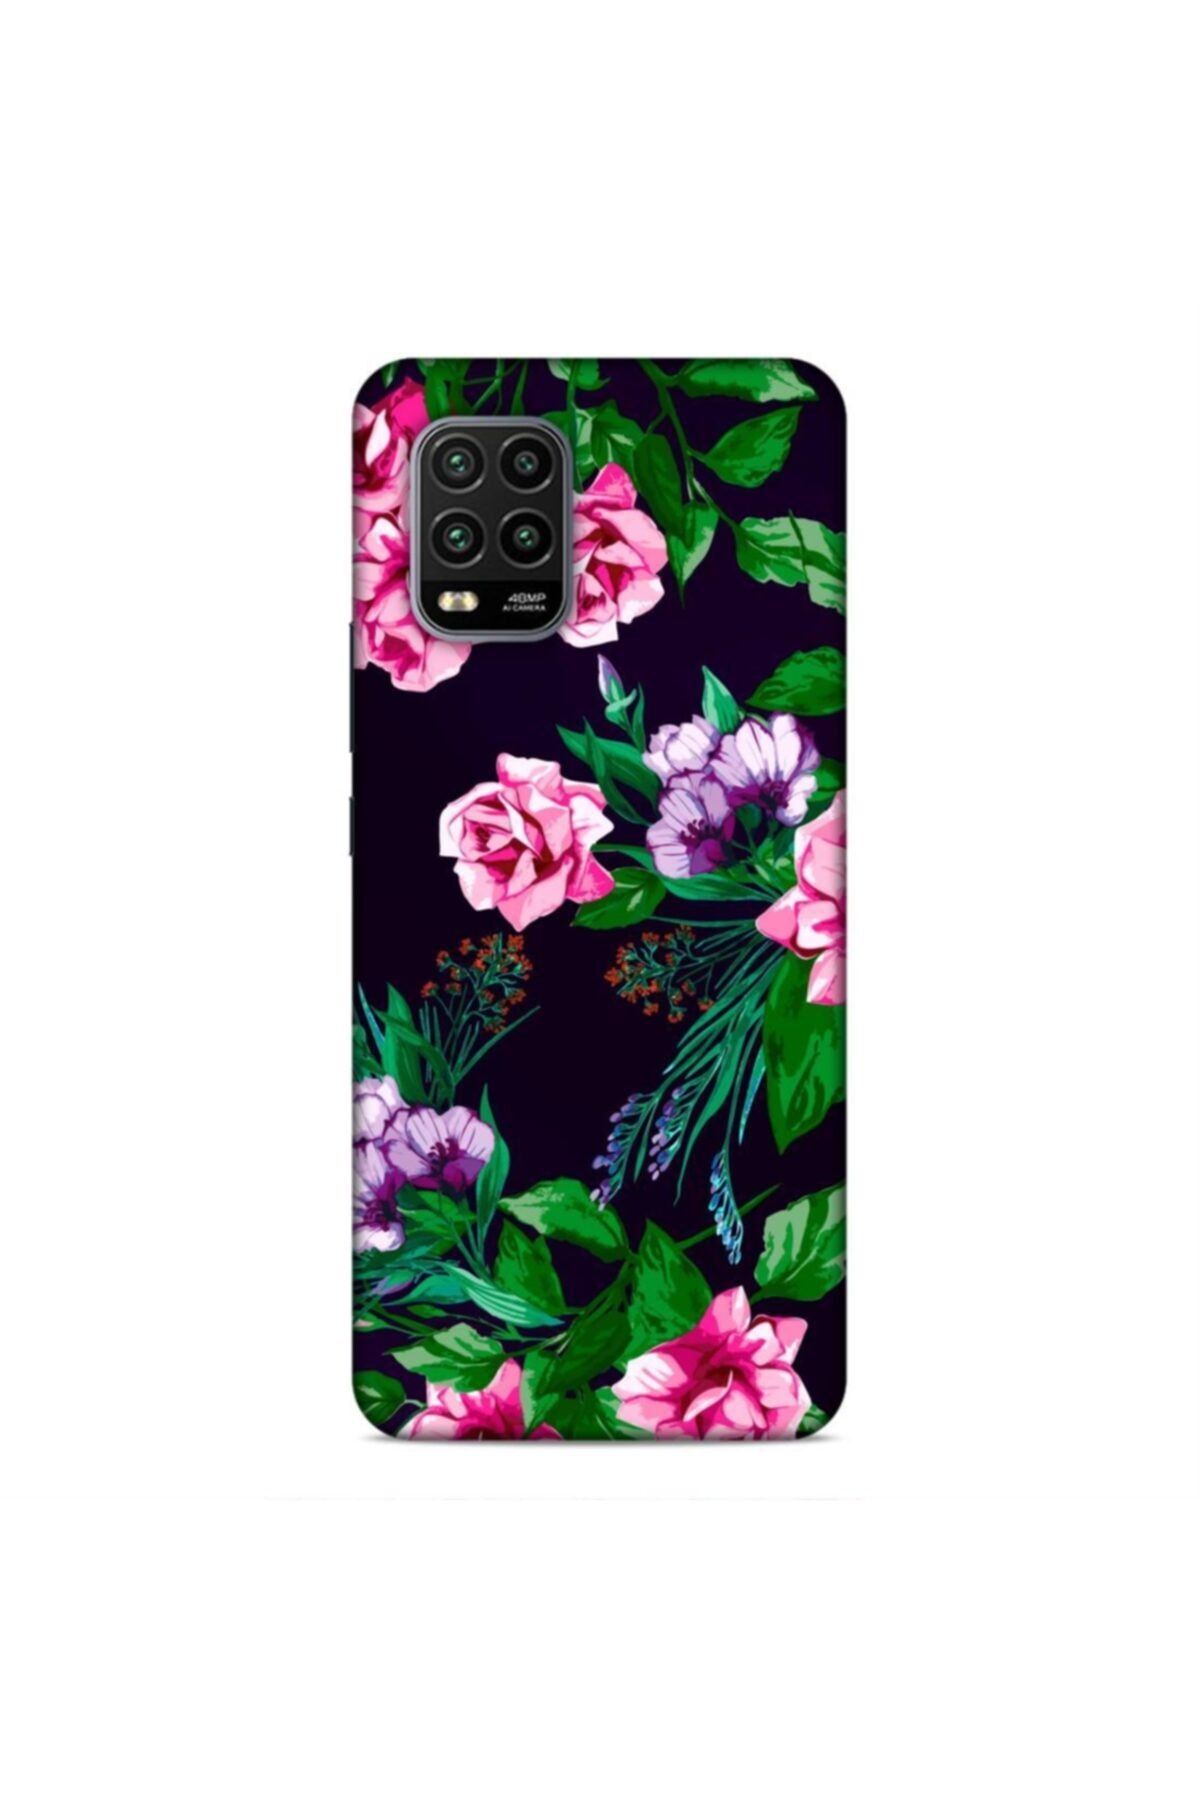 Pickcase Xiaomi Mi 10 Lite Kılıf Desenli Arka Kapak Pembe Çiçekler